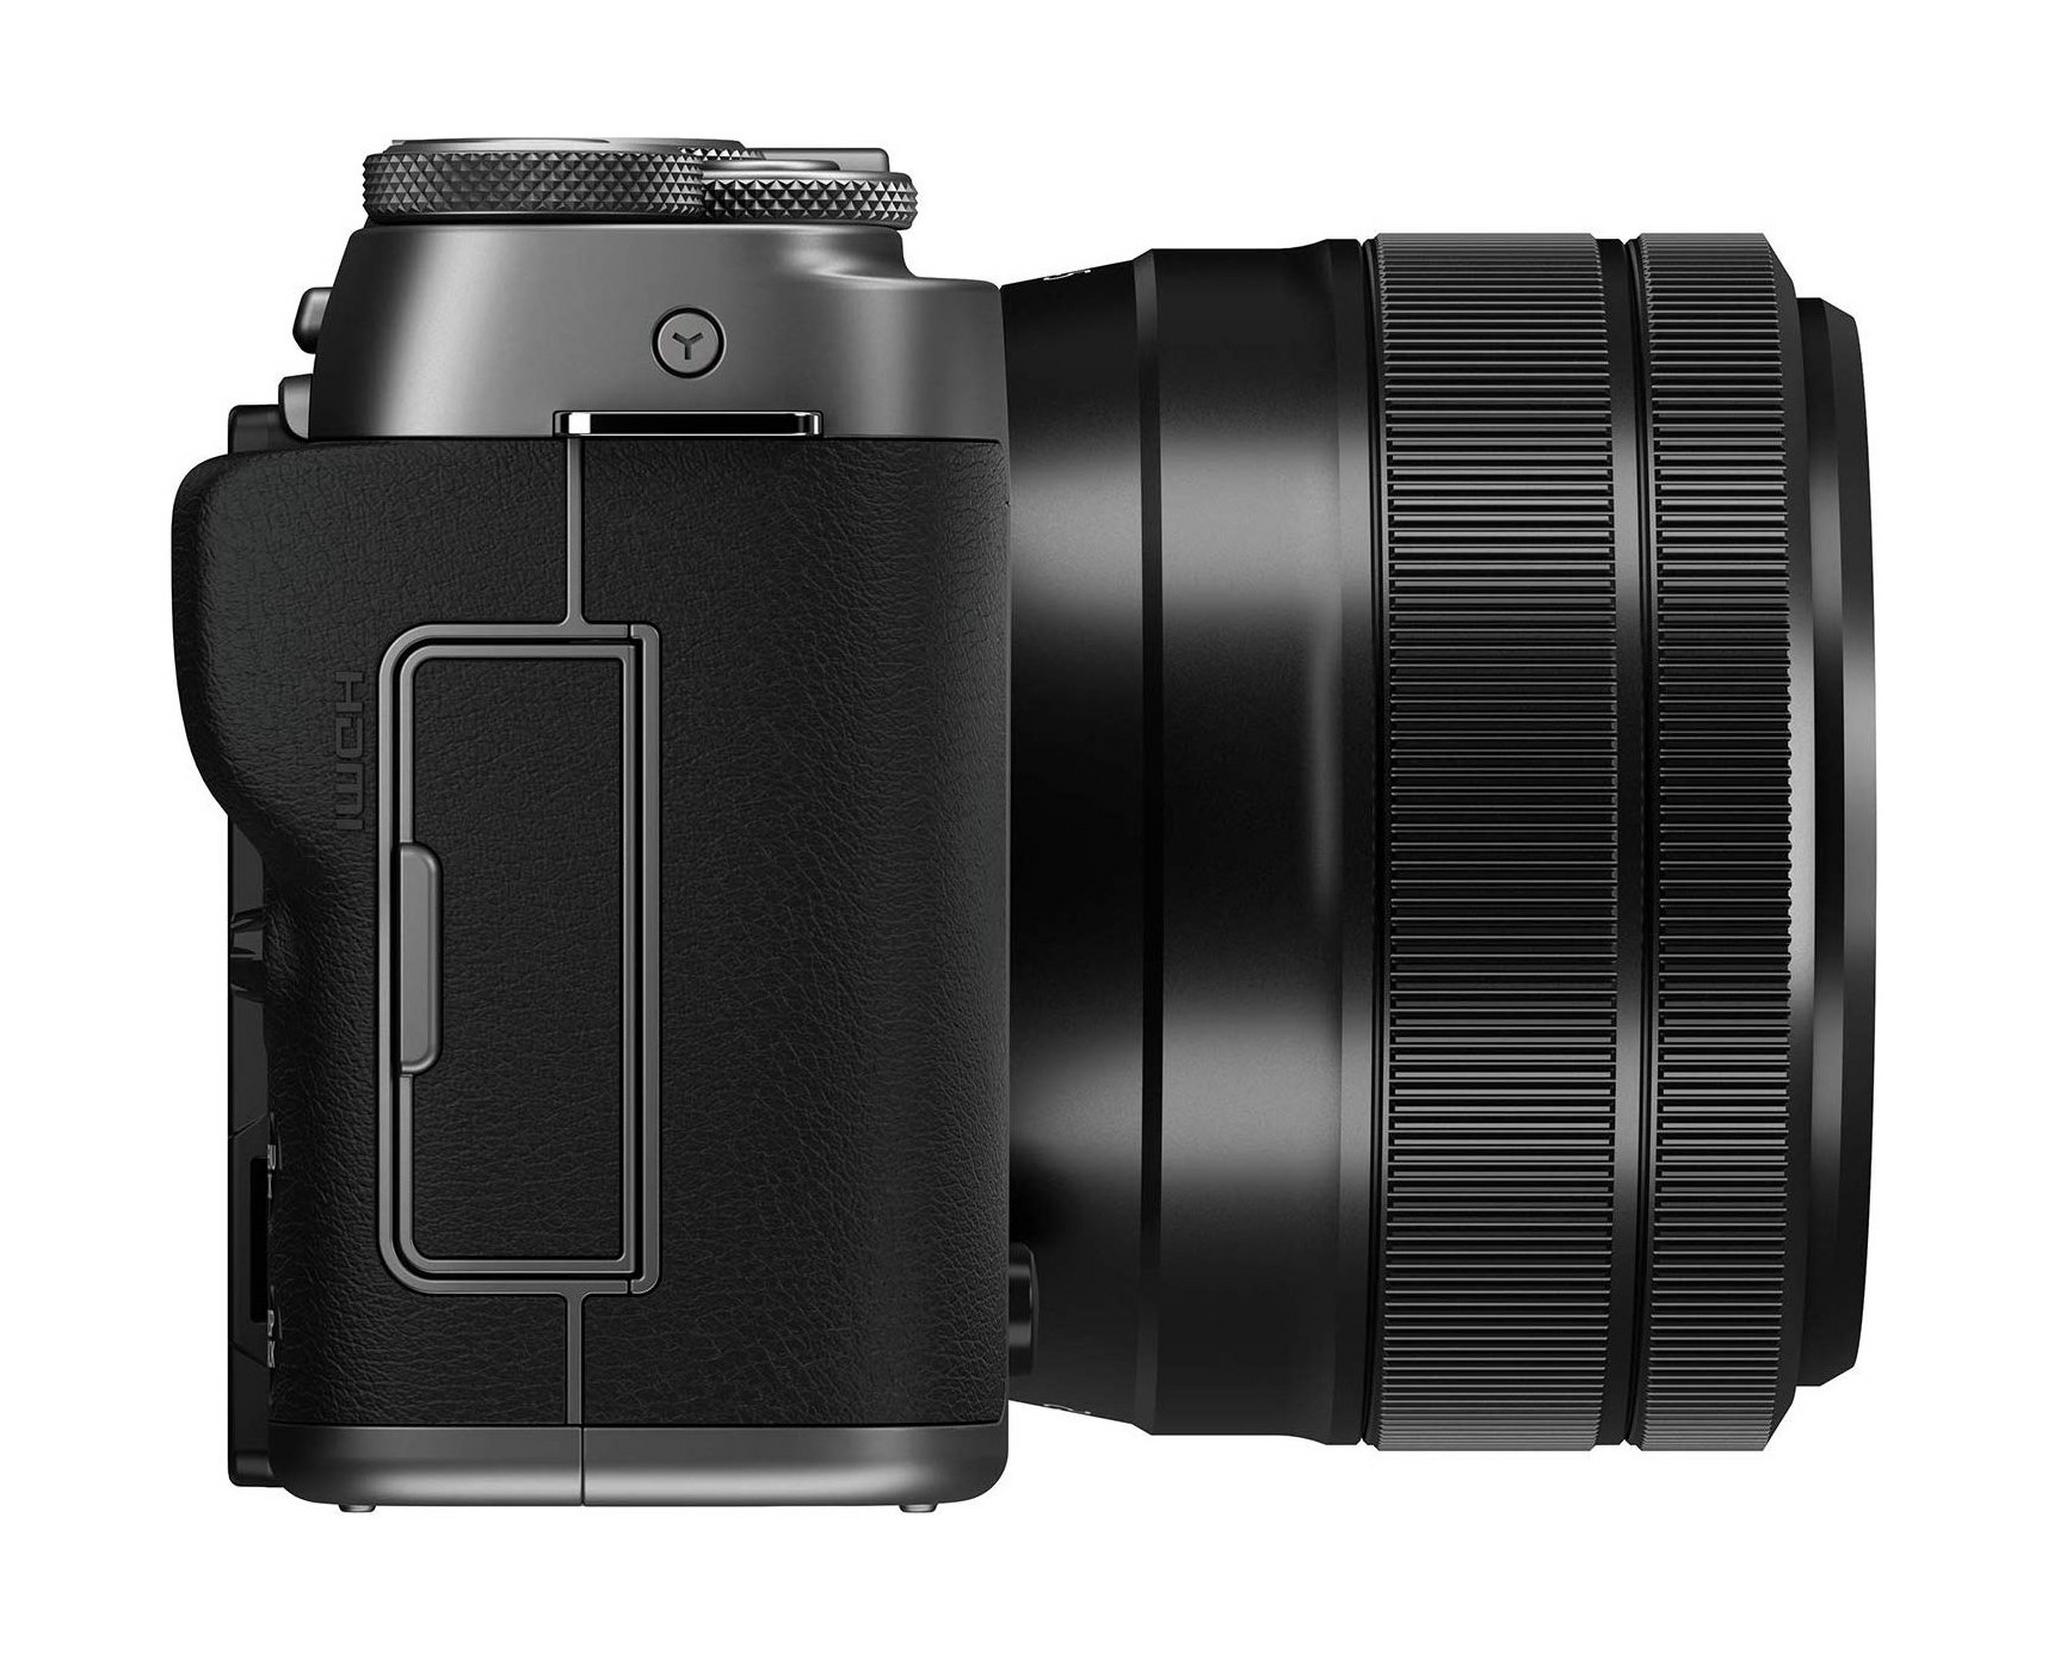 كاميرا فوجي فيلم X-A7 الرقمية بدون مرآة مع عدسة مقاس 15-45 ملم - فضي داكن